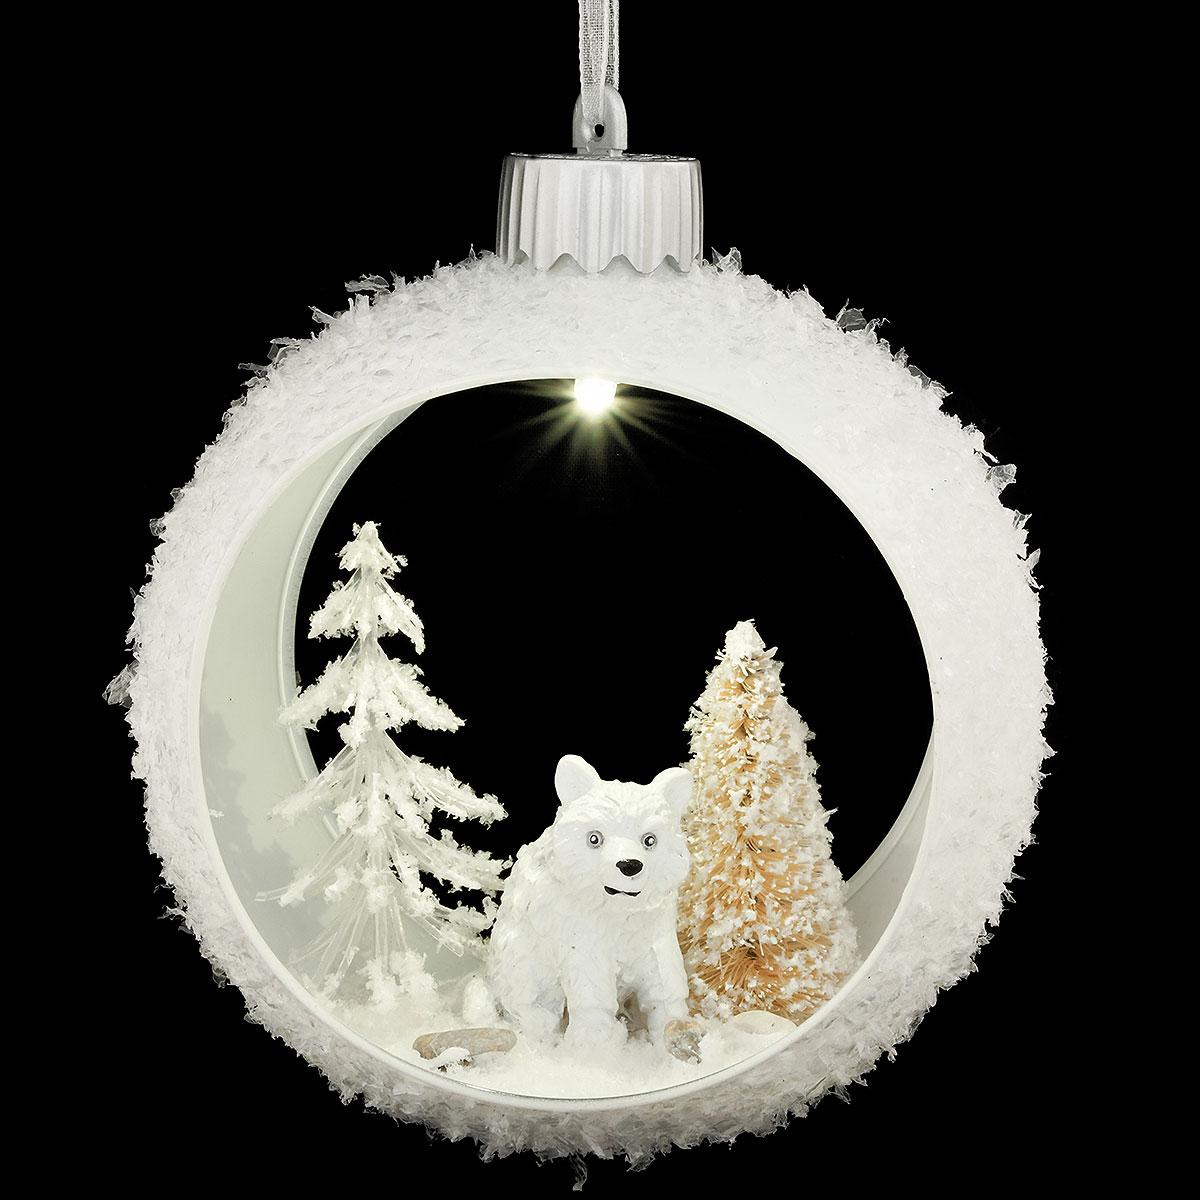 Lighted Polar Bear Diorama Ornament